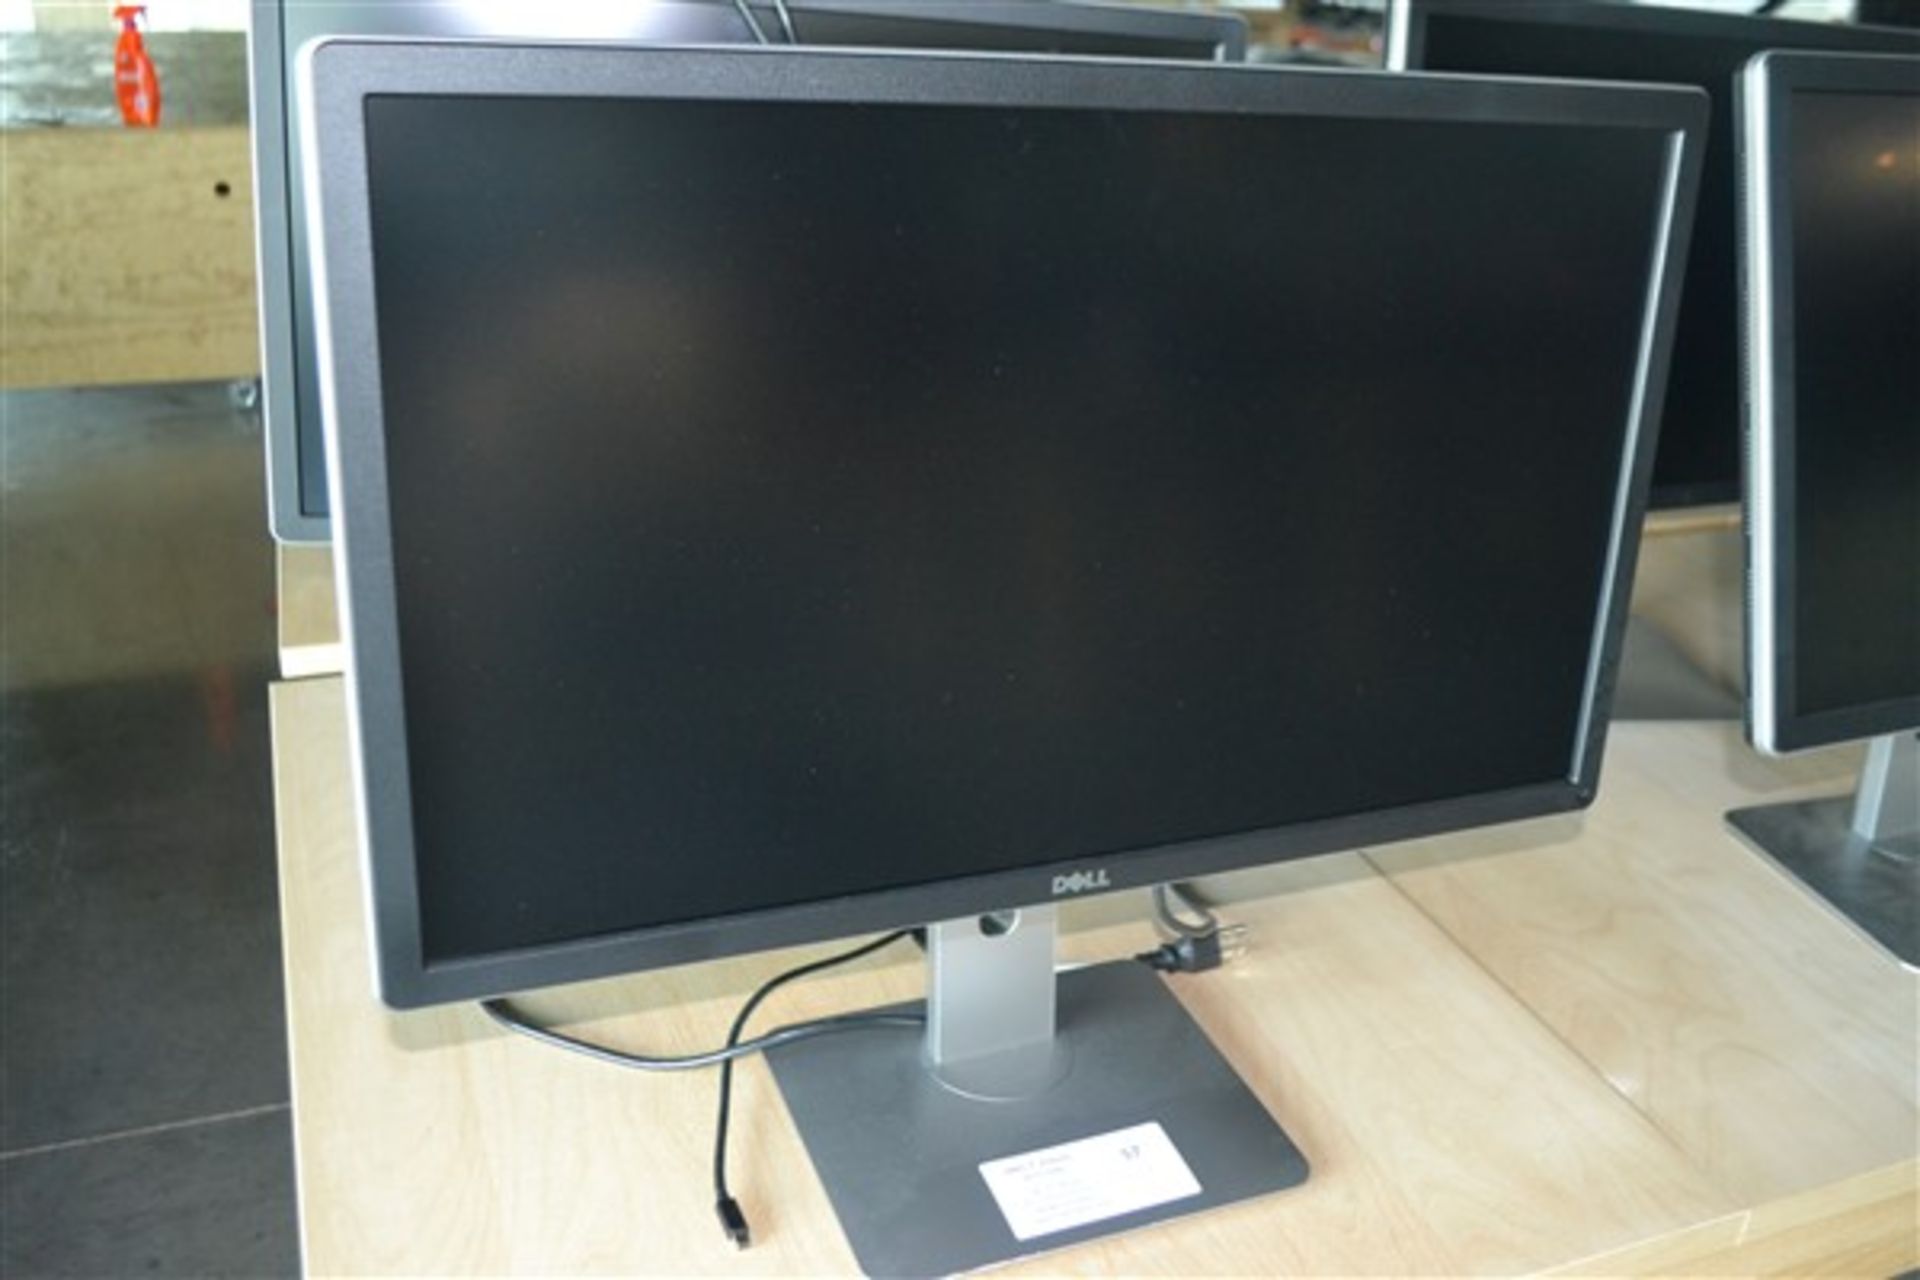 2-Dell Monitor 27 inch